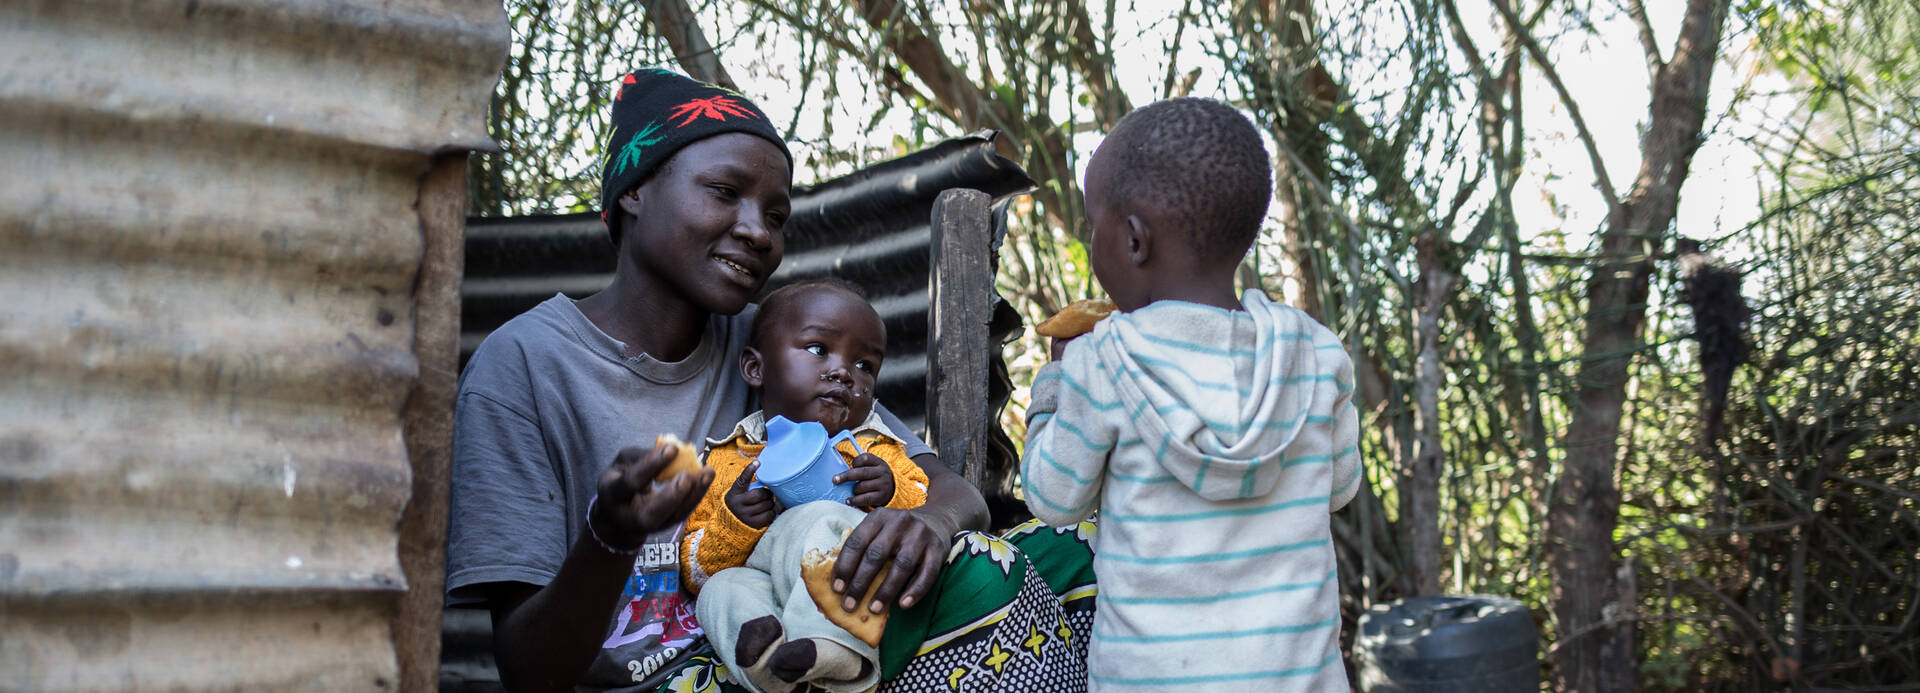 Frau mit ihren Kindern in Kenia.